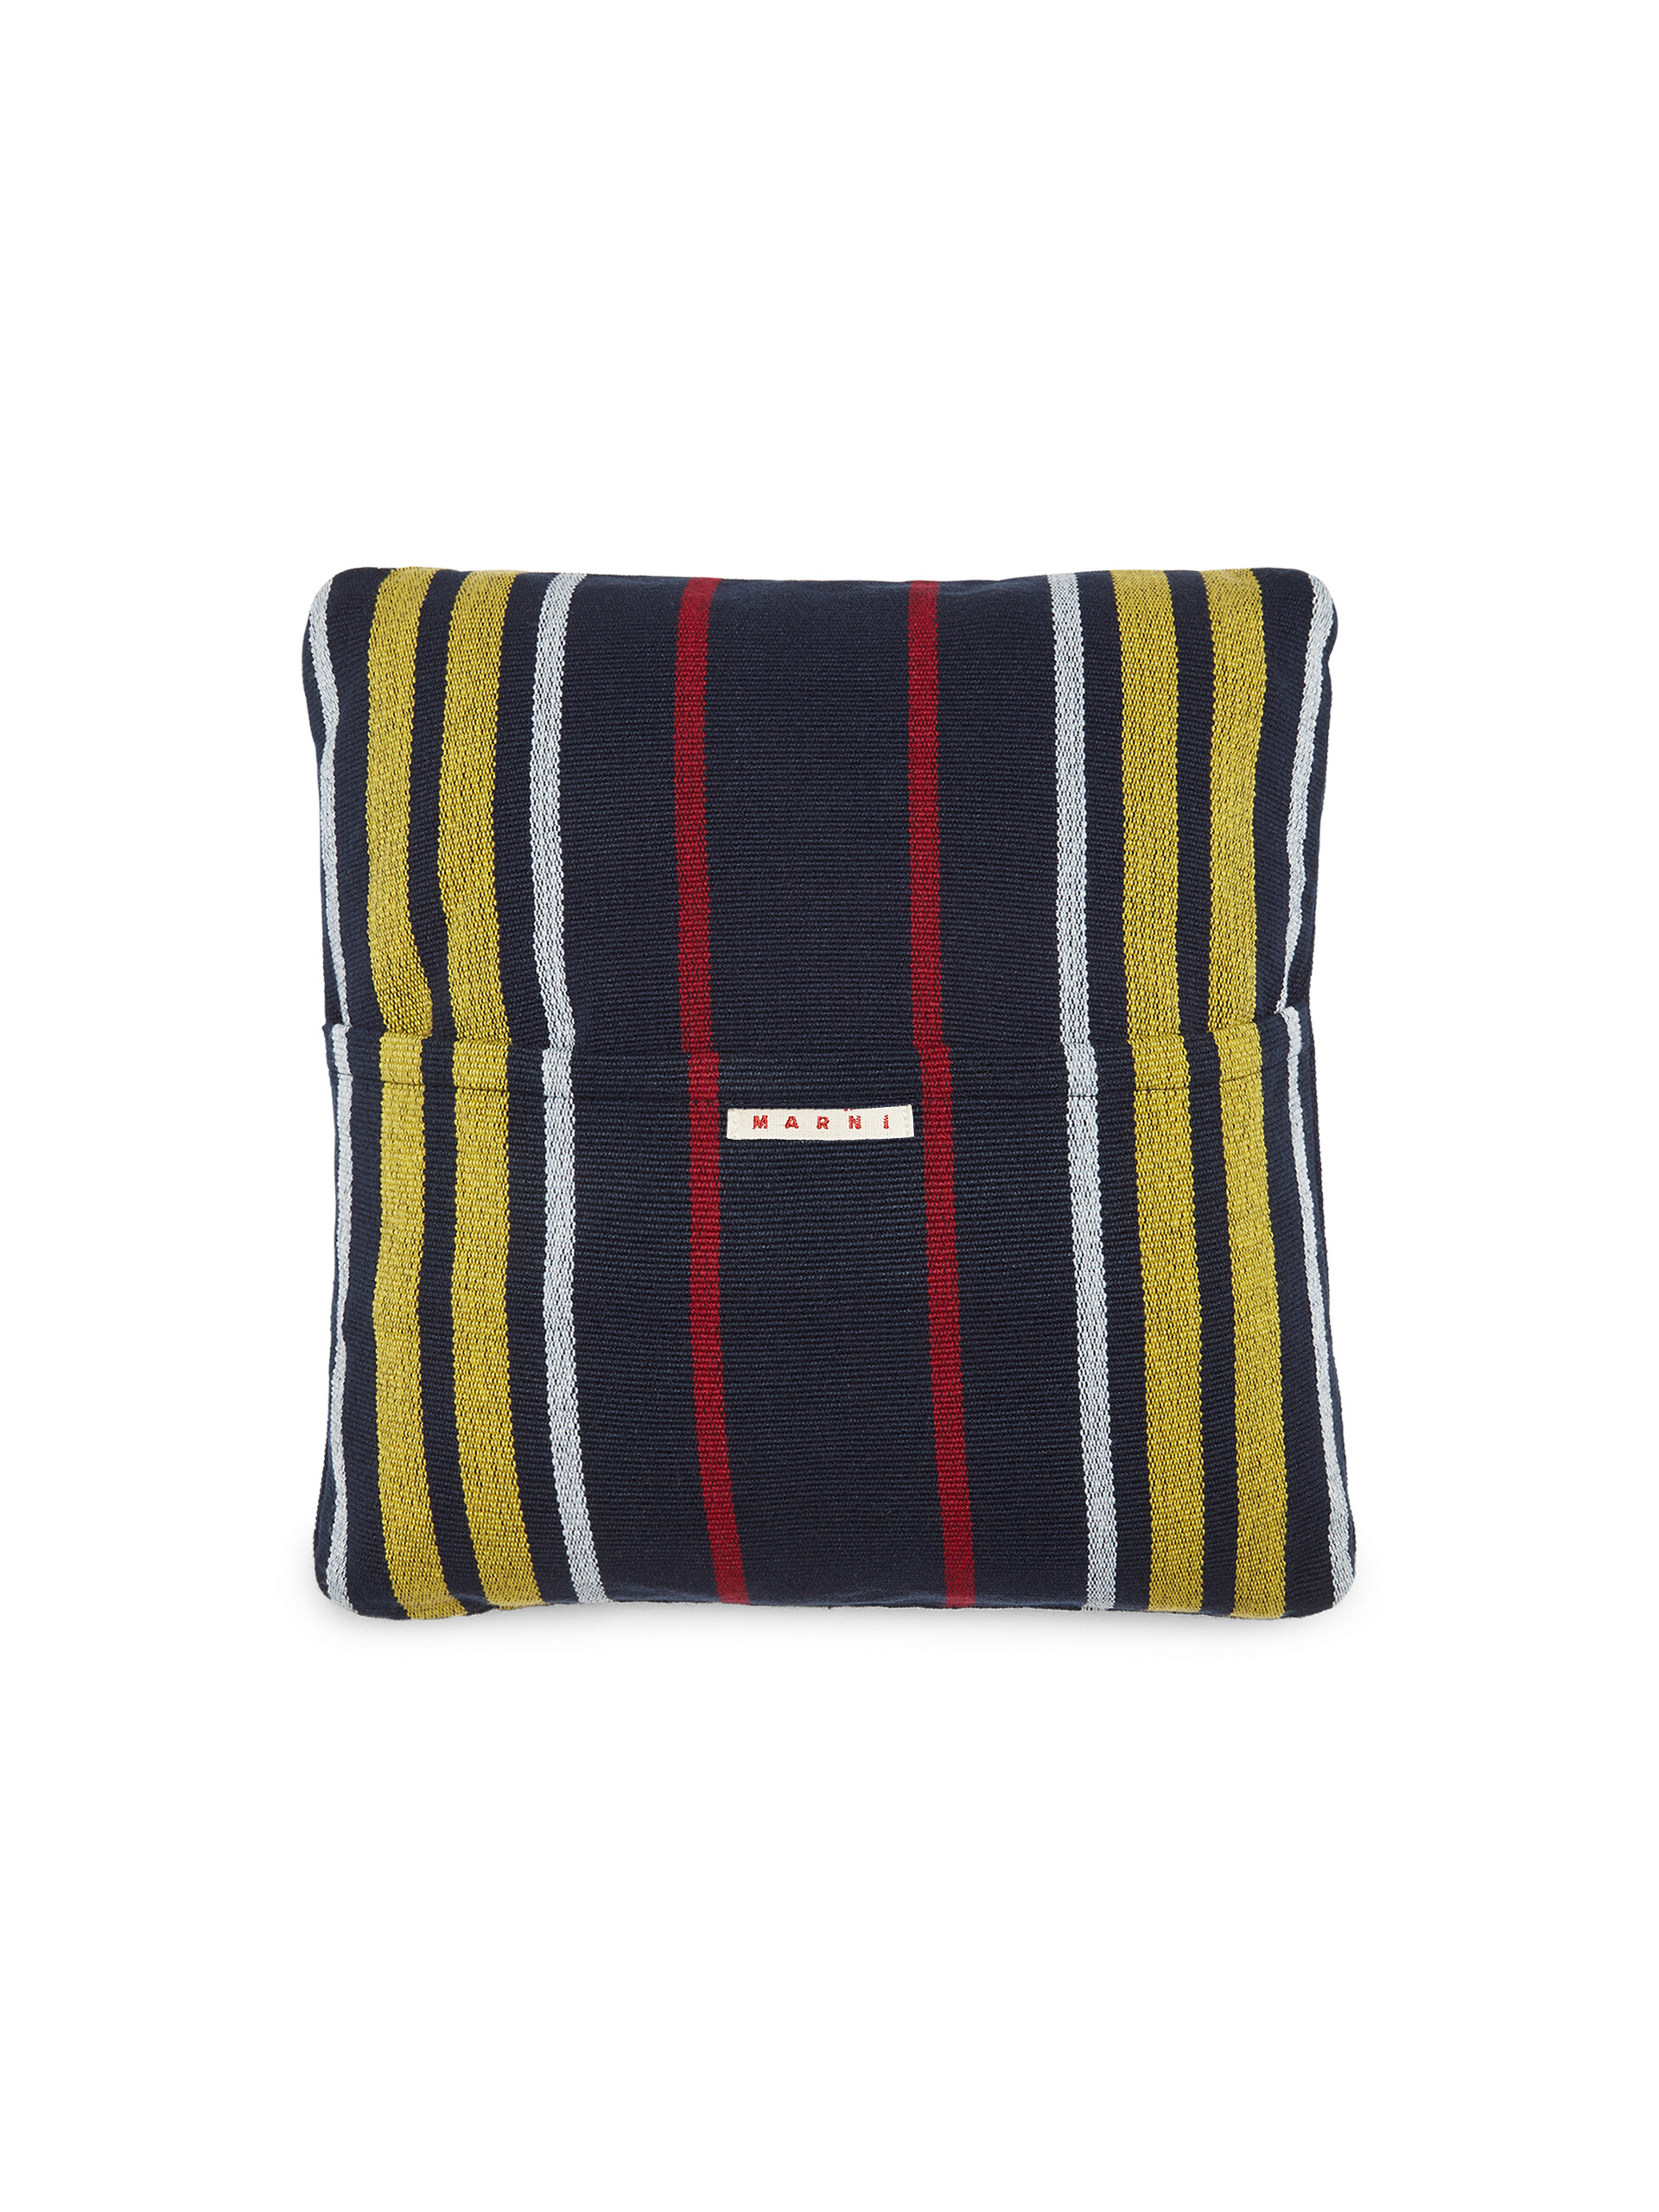 MARNI MARKET square cushion in multicolor black fabric - Furniture - Image 2